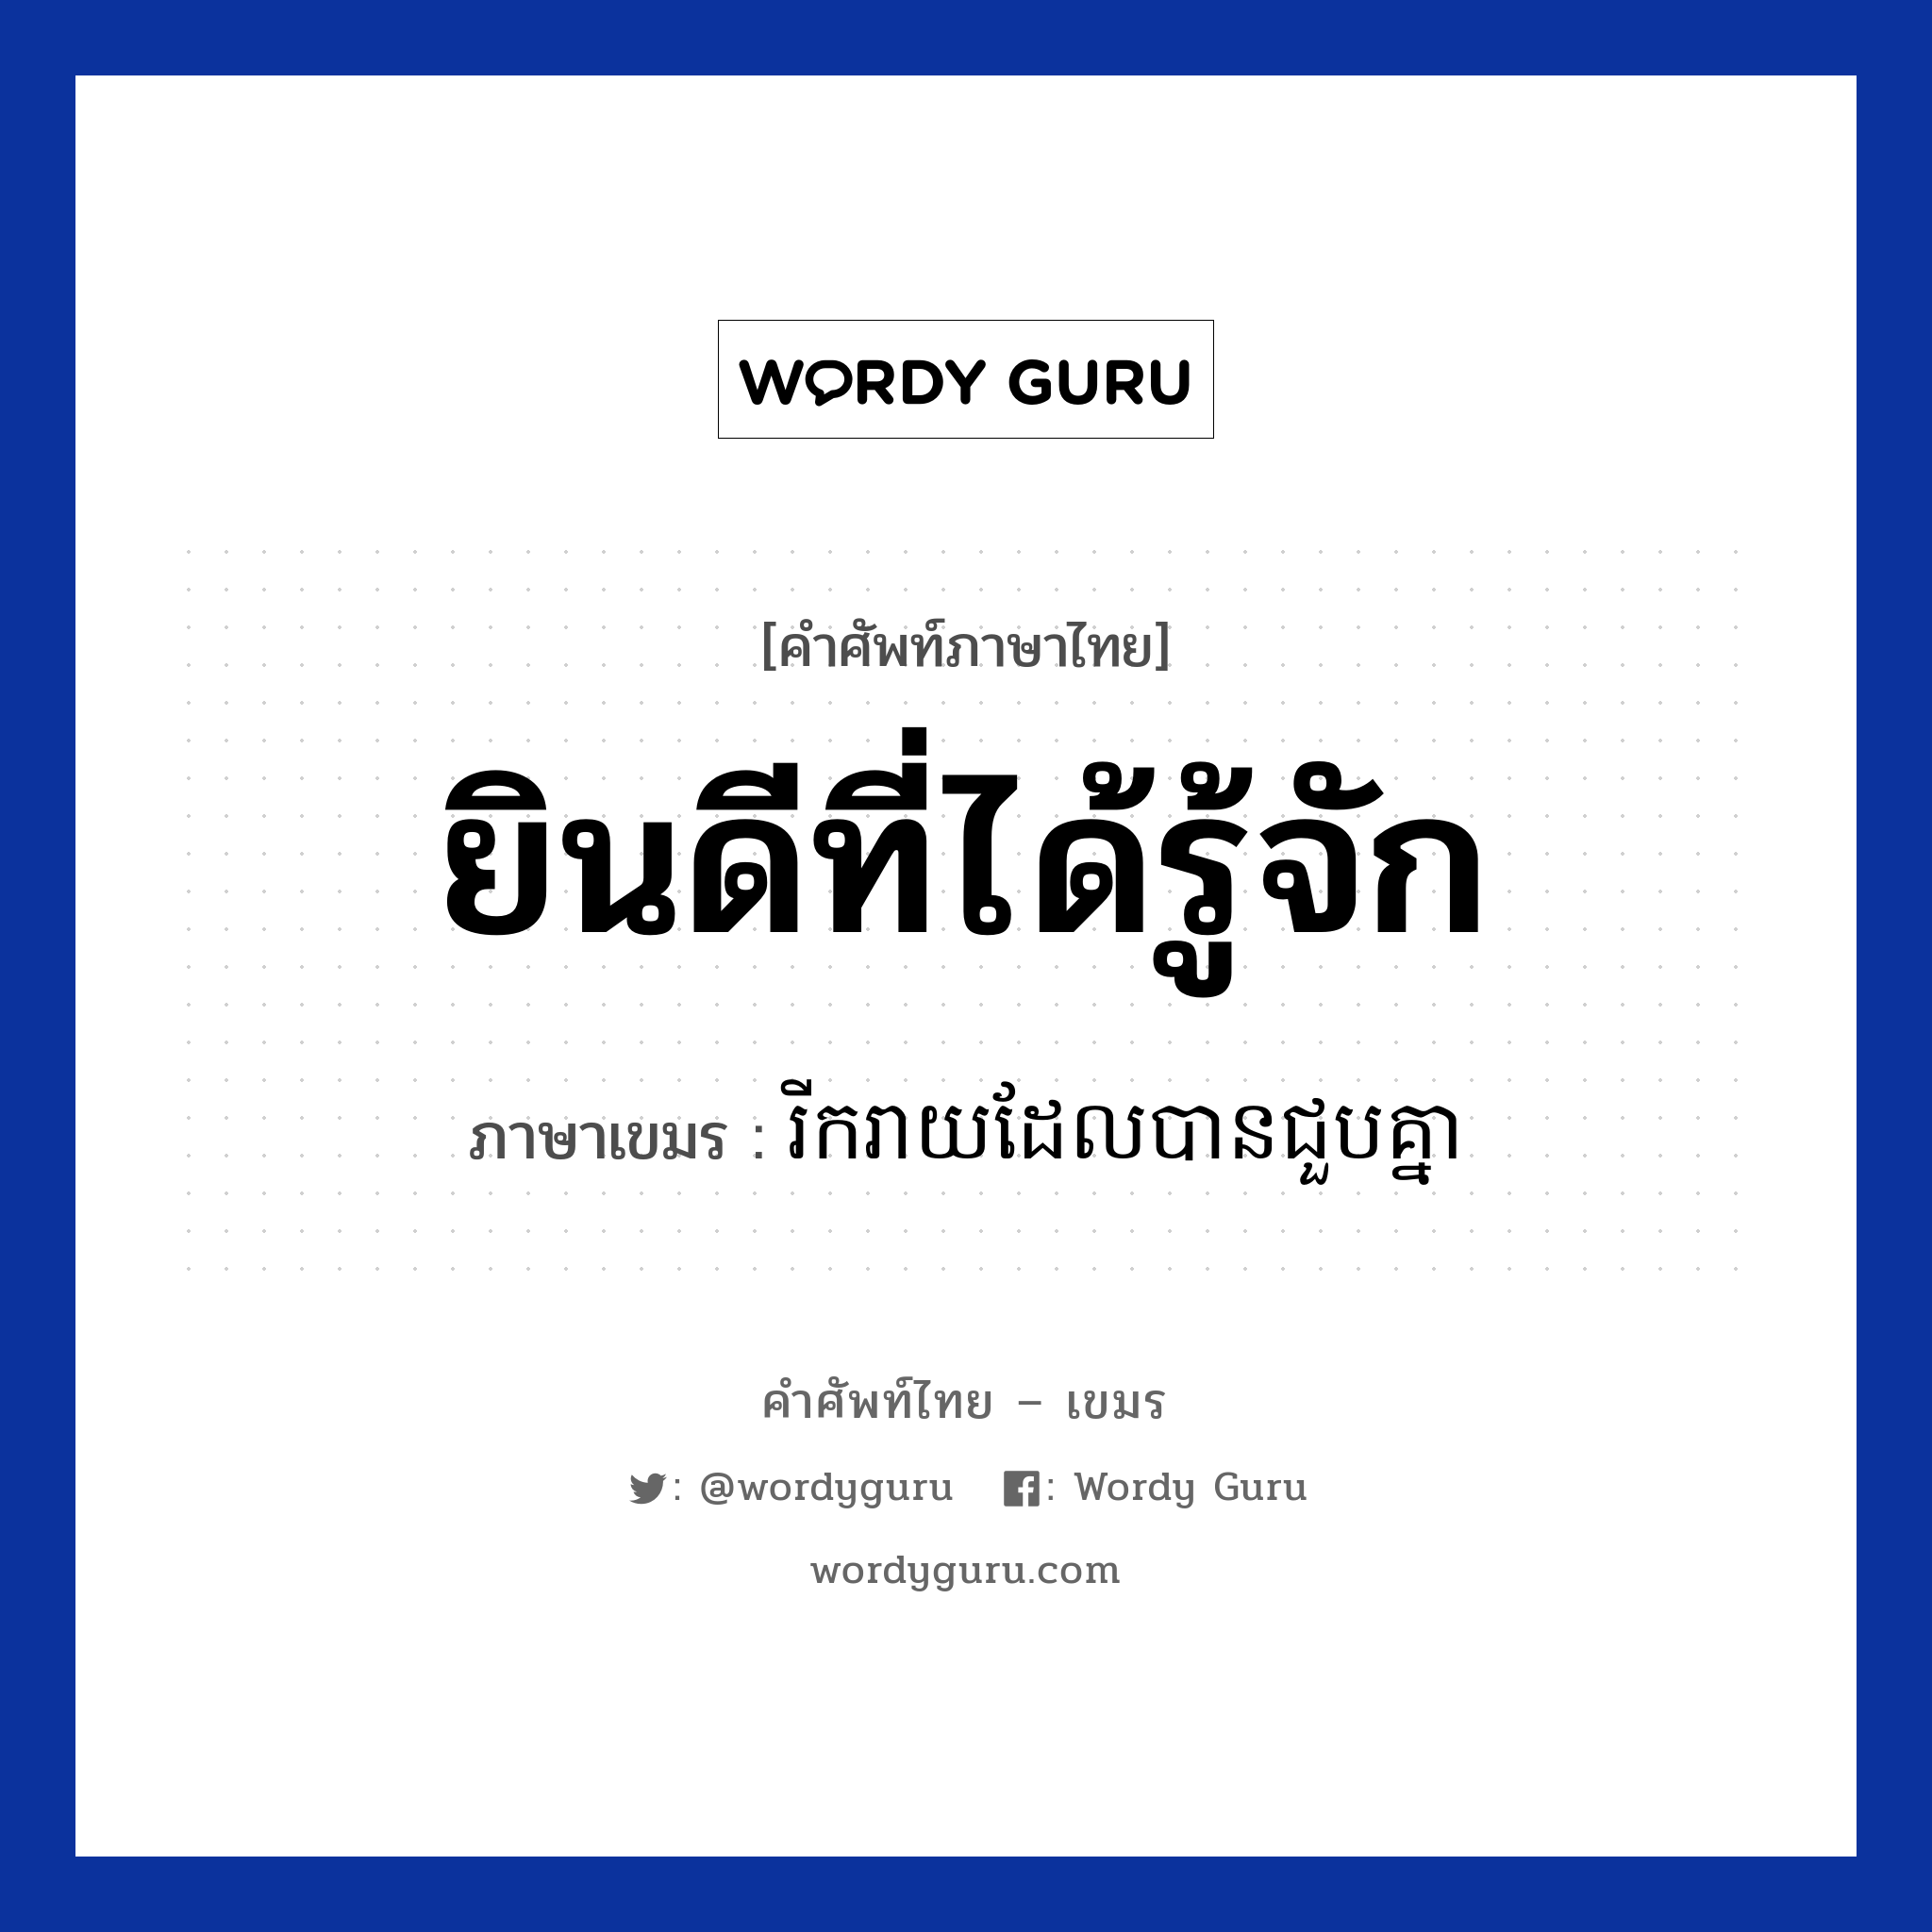 ยินดีที่ได้รู้จัก ภาษาเขมรคืออะไร, คำศัพท์ภาษาไทย - เขมร ยินดีที่ได้รู้จัก ภาษาเขมร រីករាយដែលបានជួបគ្នា หมวด ทักทาย Rikreay del ban chuob knea หมวด ทักทาย